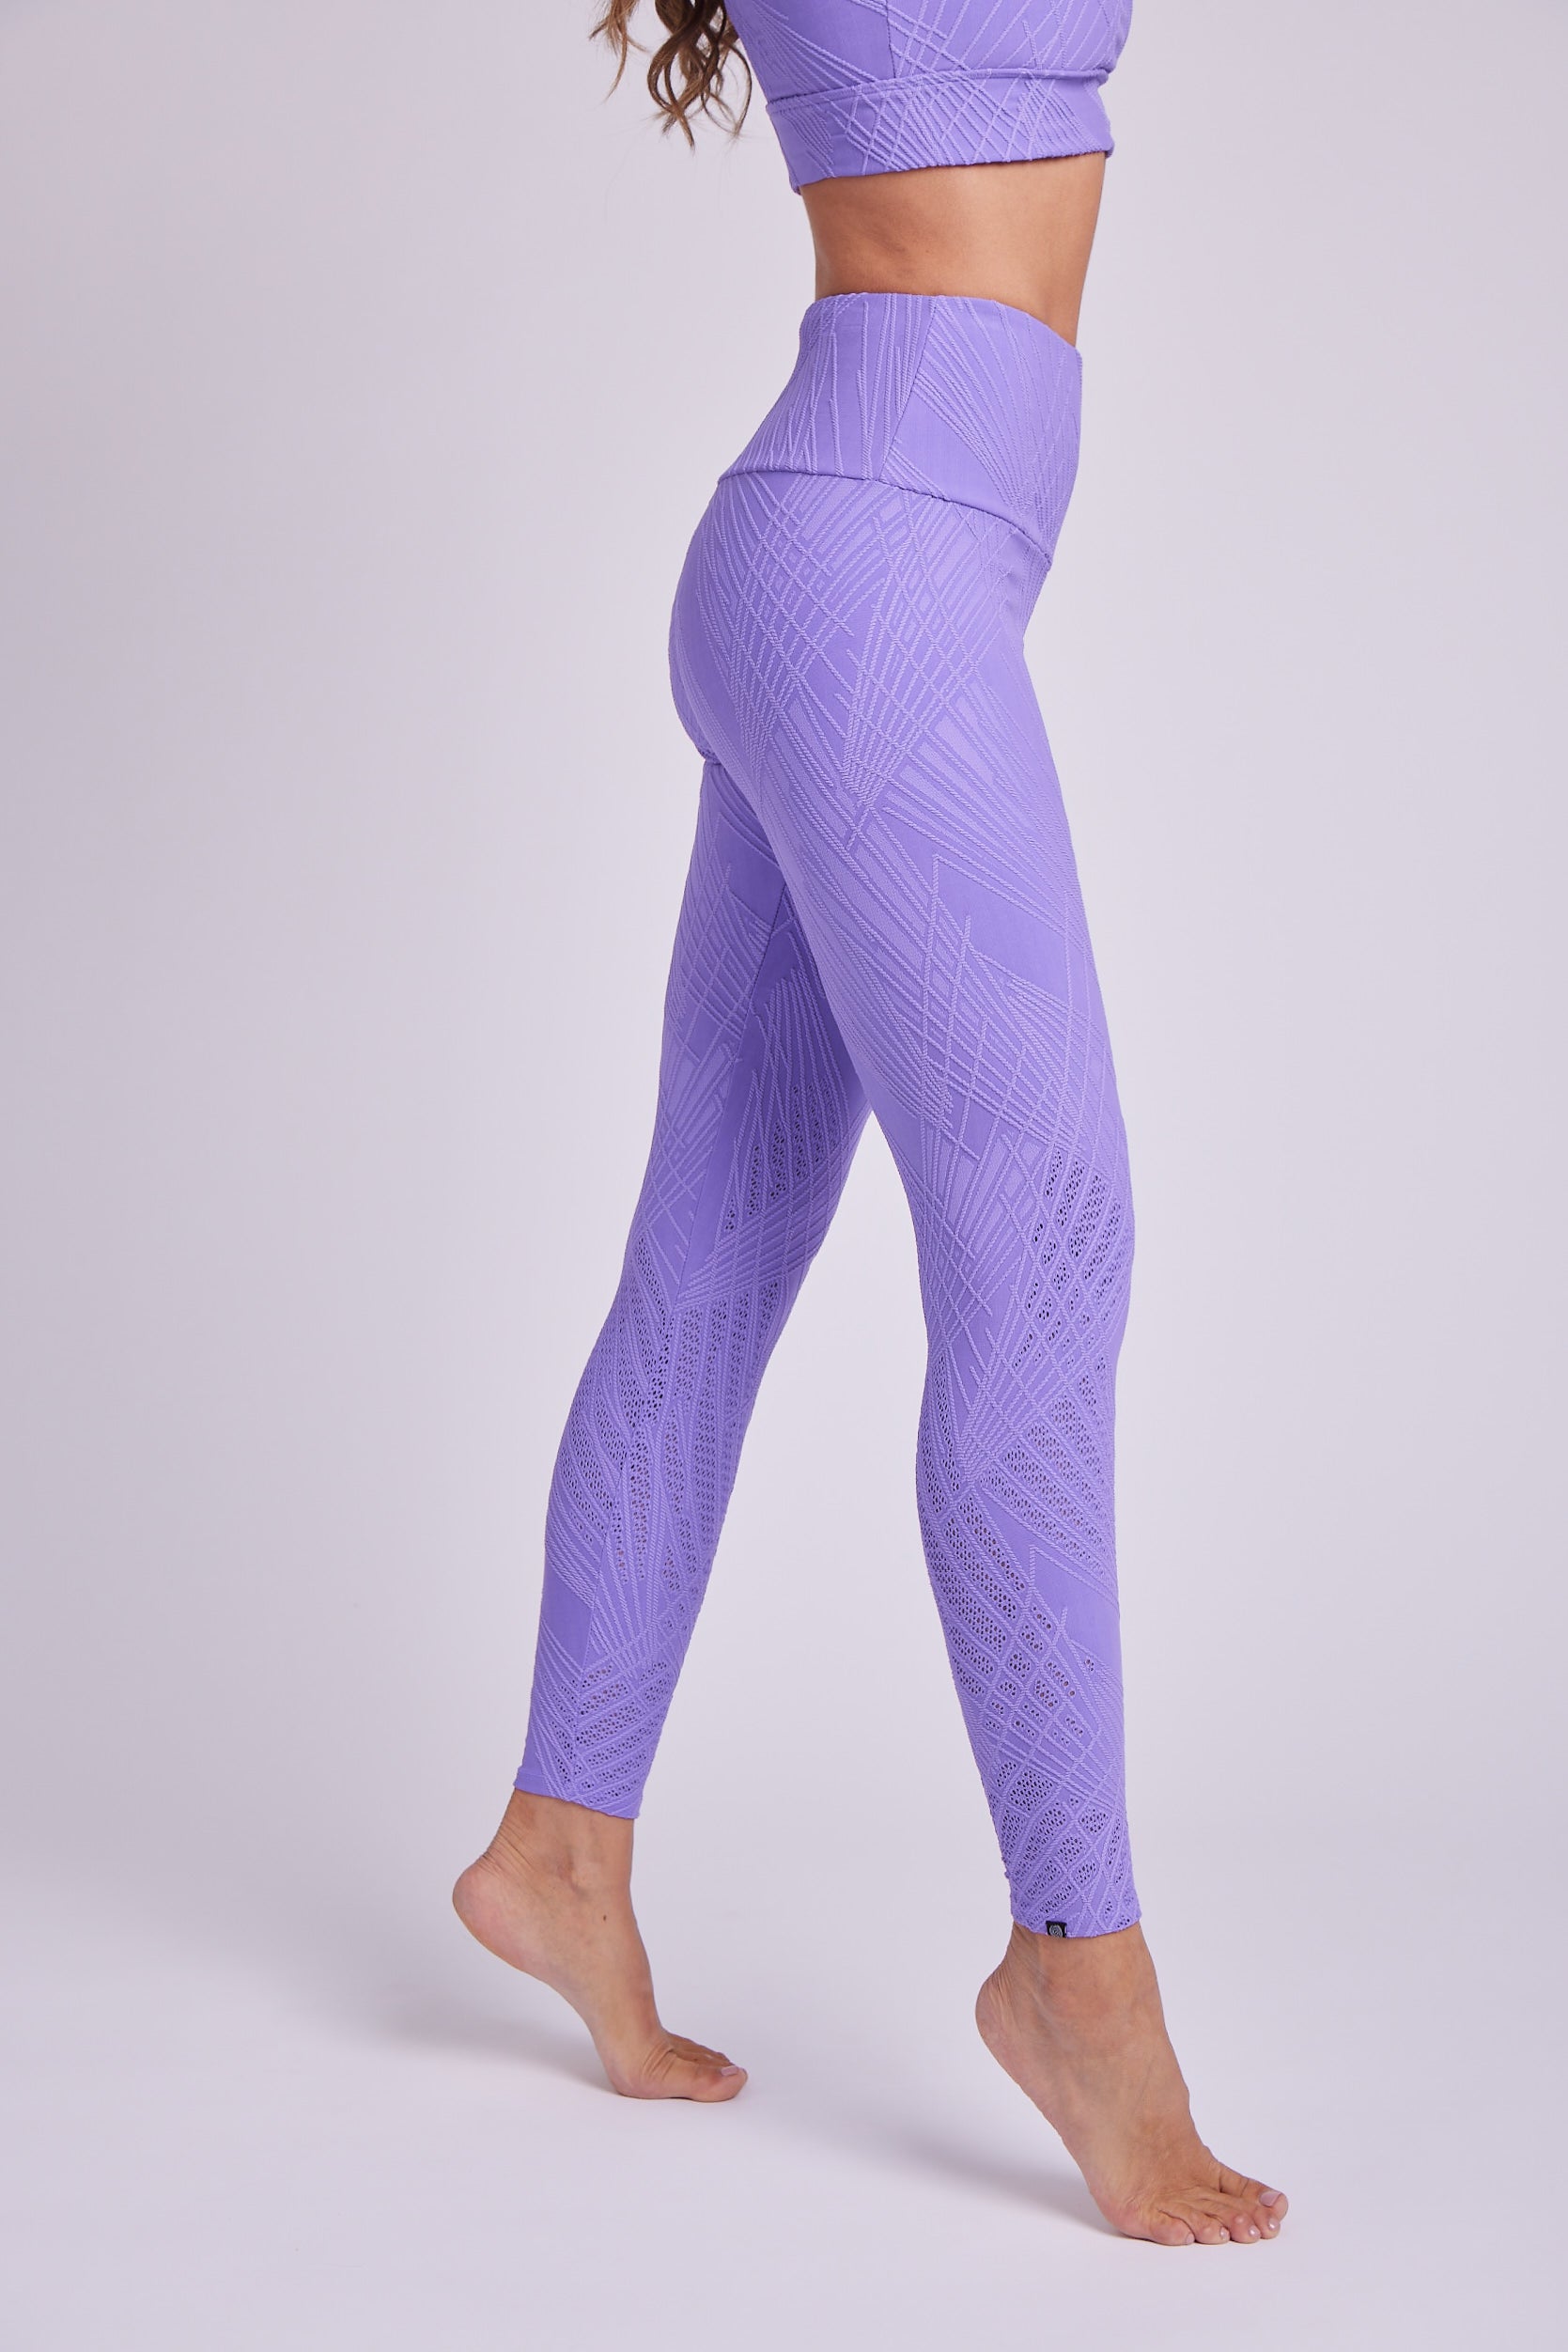 http://www.wedoyoga.co.uk/cdn/shop/products/onzie-leggings-selenite-midi-legging-violet-selenite-37141196701908.jpg?v=1652986125